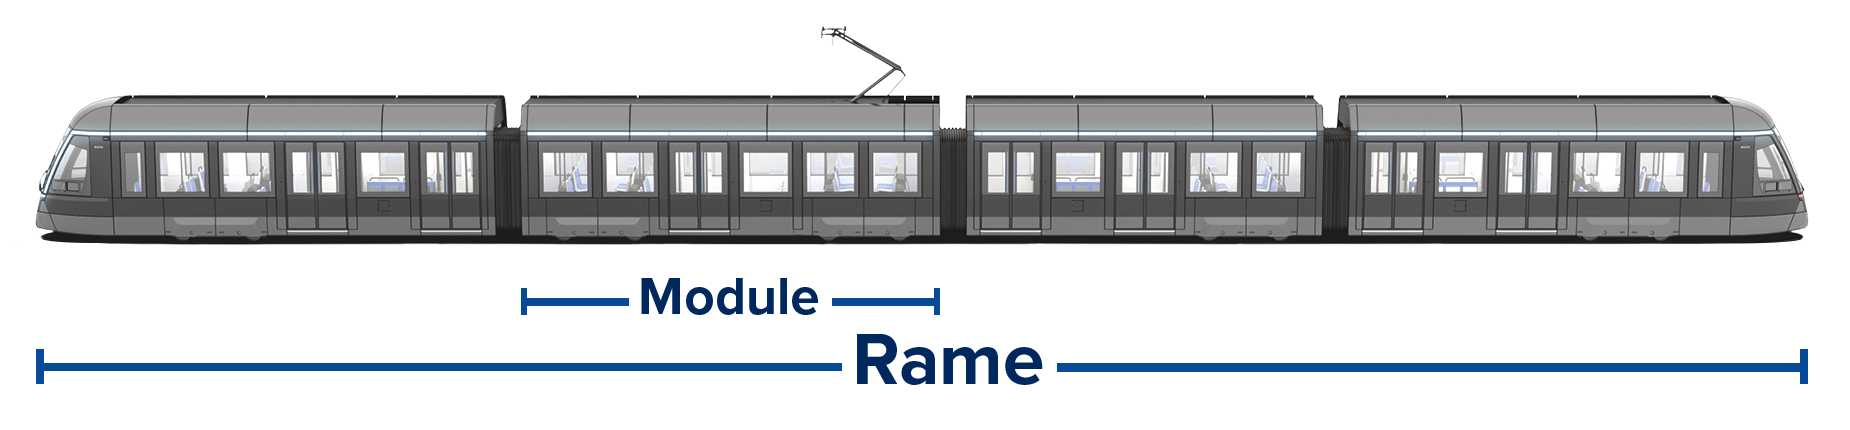 Rame de tramway avec deux cabines aux extrémités et les modules au centre.